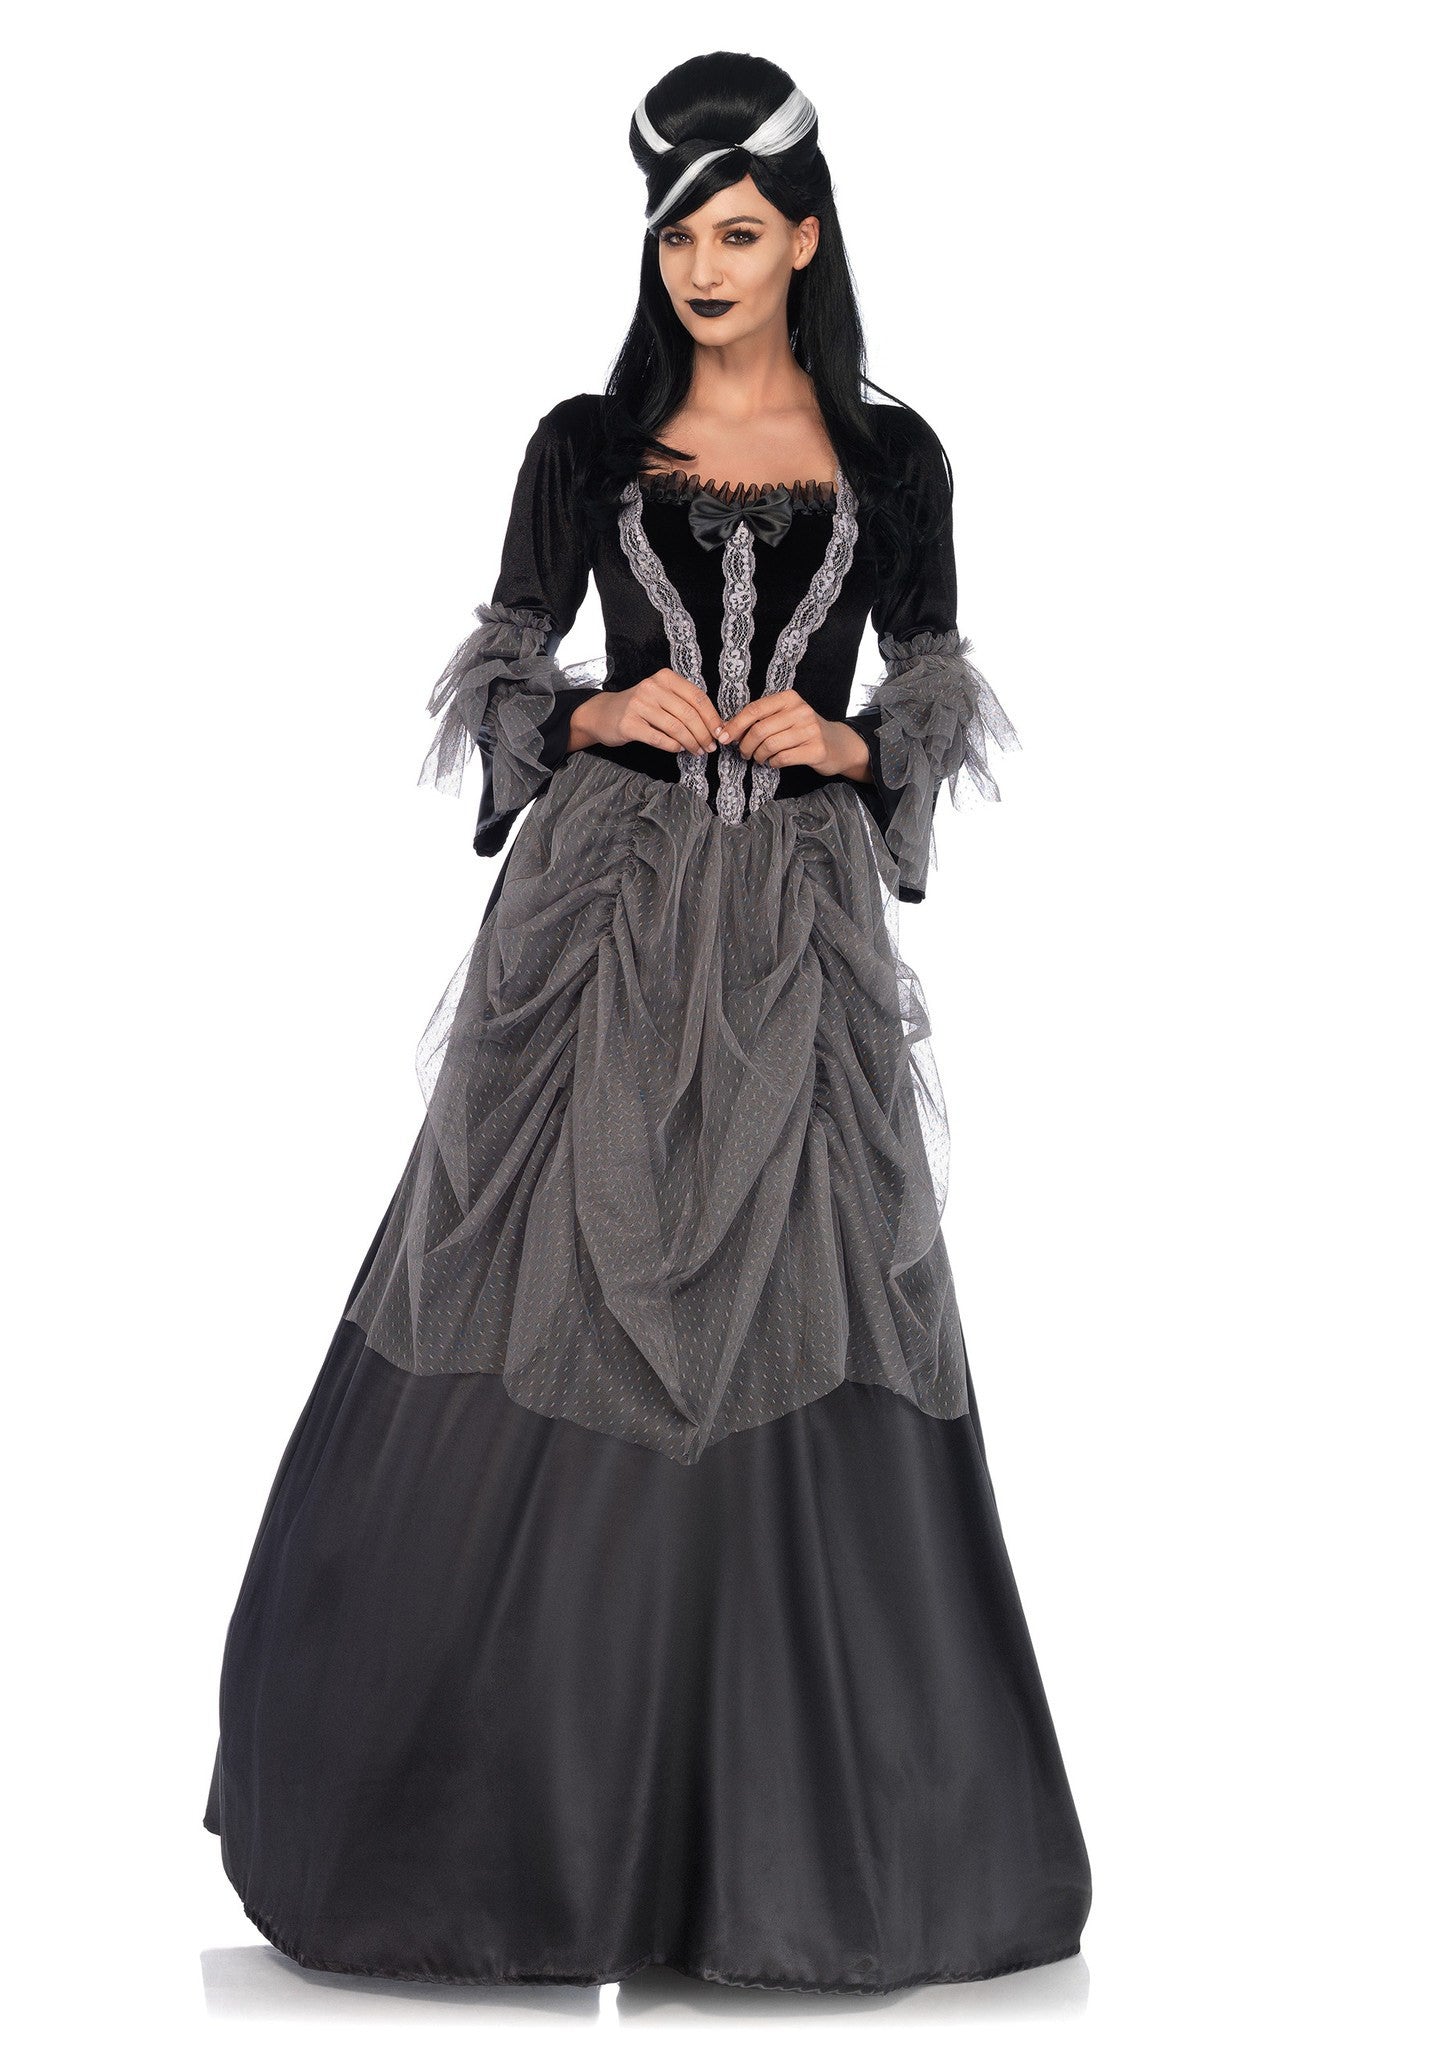 Costume - Velvet Victorian Ball Gown Costume